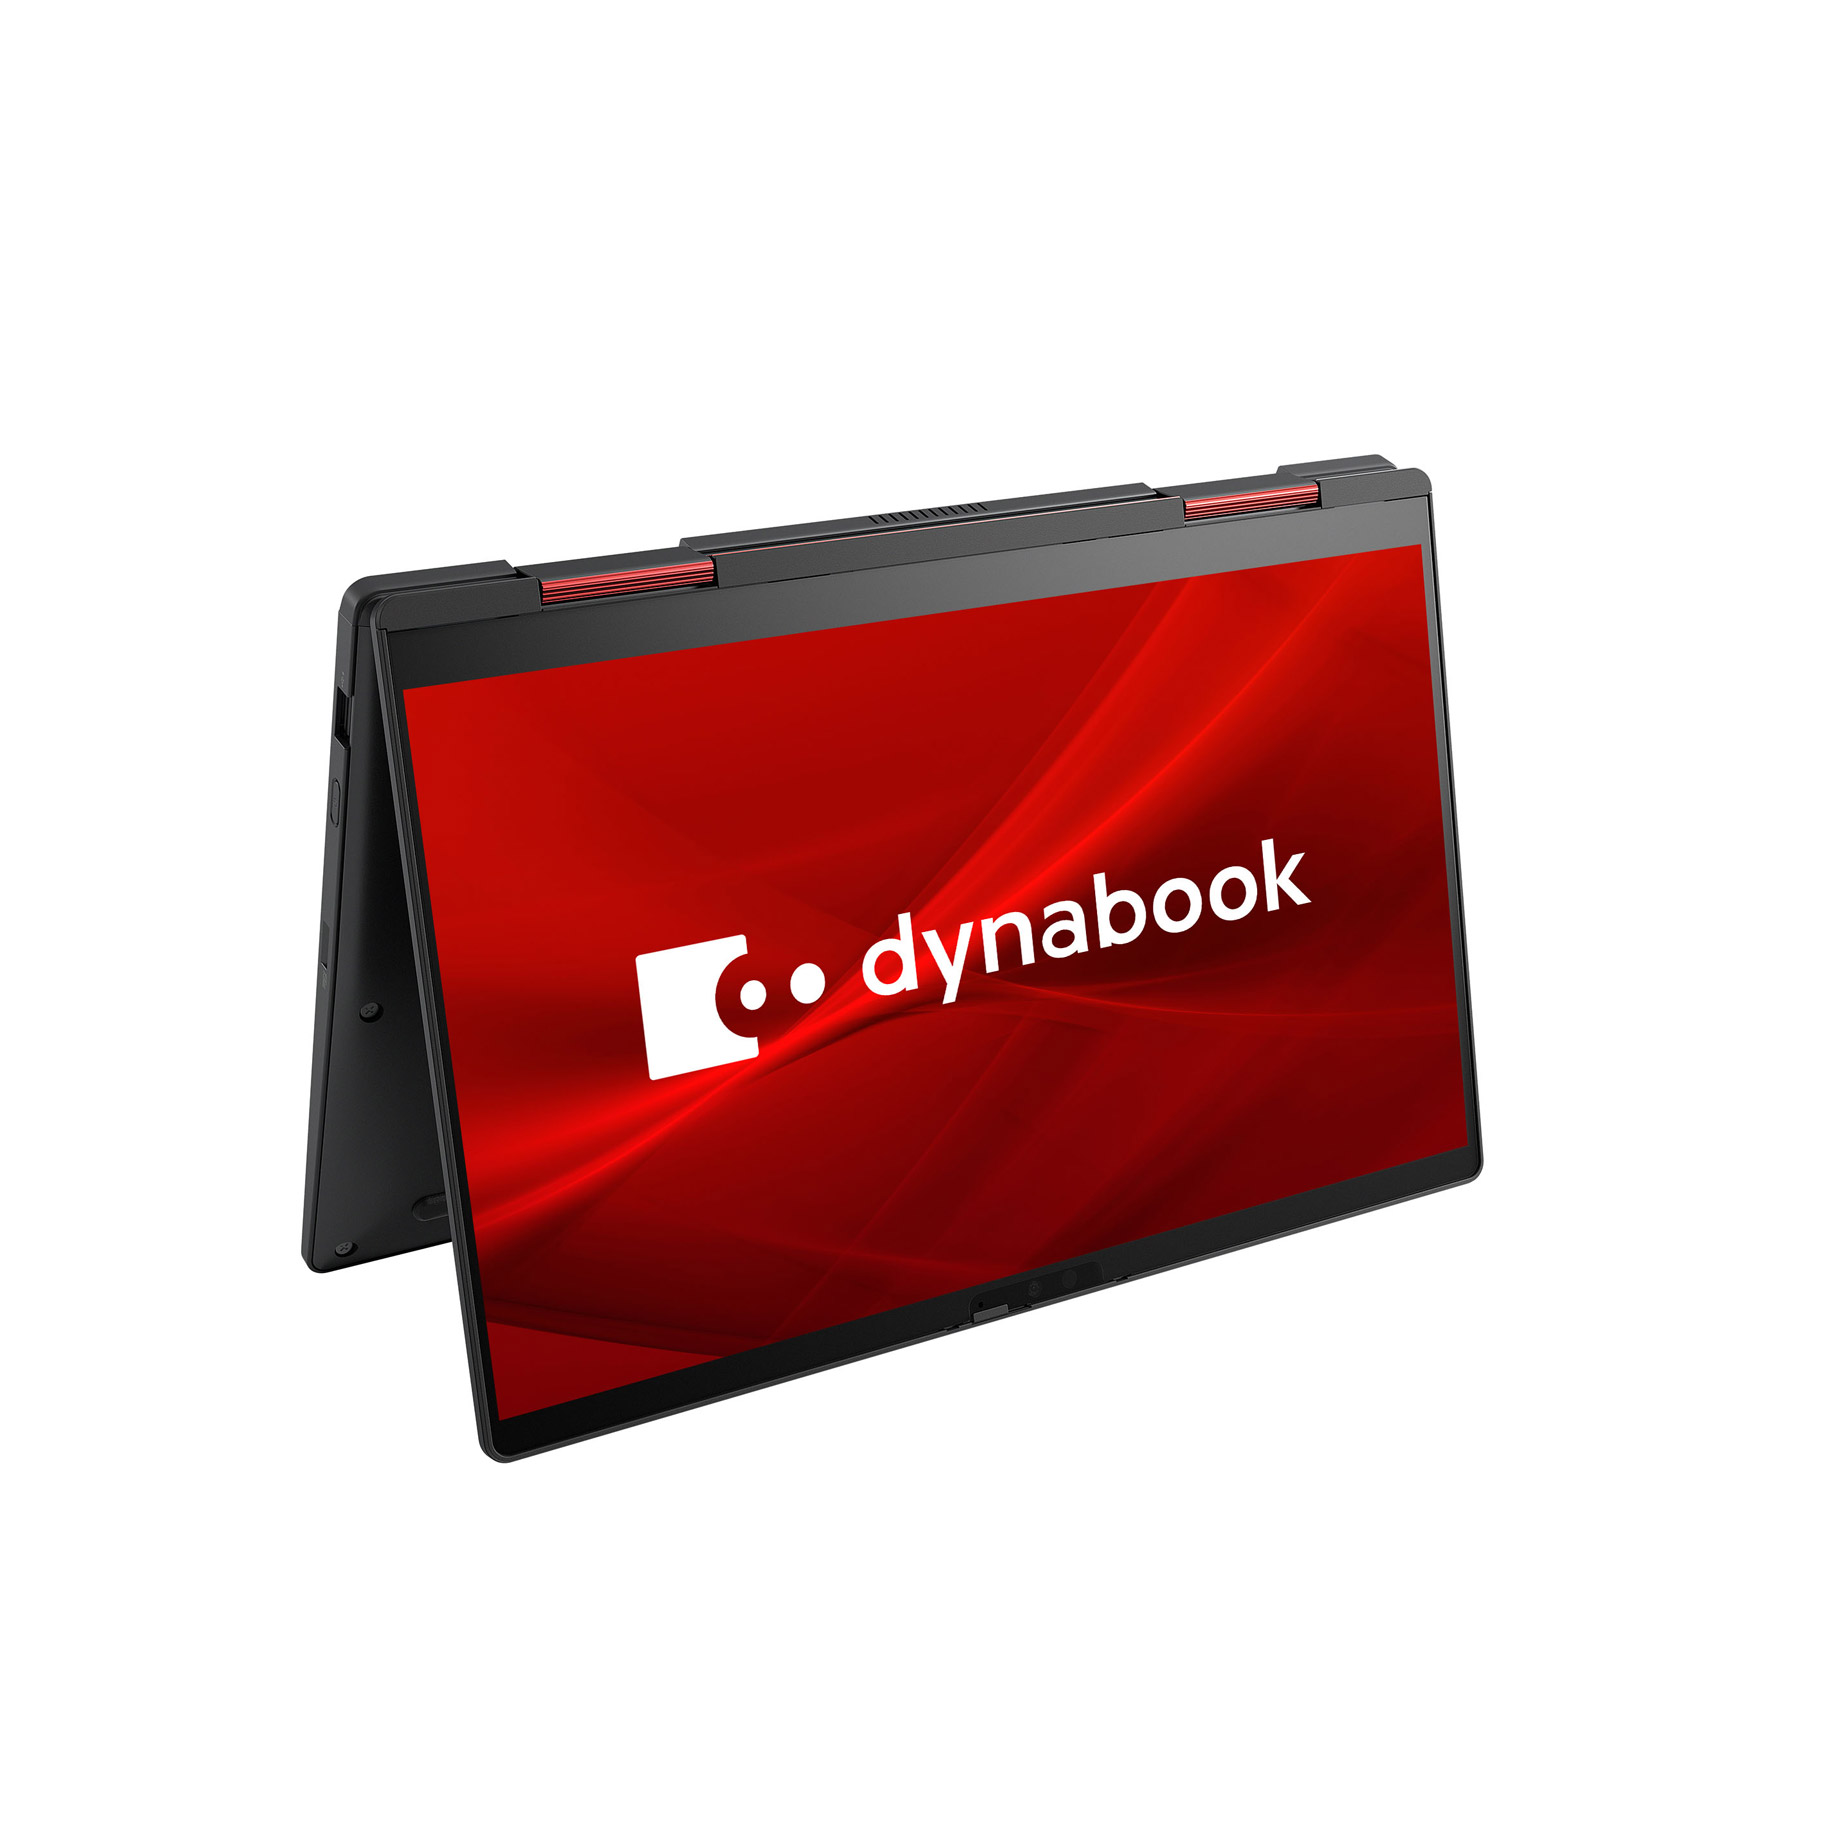 ノートパソコン P2v6pbbb プレミアムブラック Dynabook Dynabook ダイナブック V6 コンバーチブル型 Dynabook ダイナブック ノートpc Core Ssd 512gb 年11月モデル 13 3型 P2v6pbbb ソフマップ デジタルコレクション Intel I5 メモリ 8gb 年11月